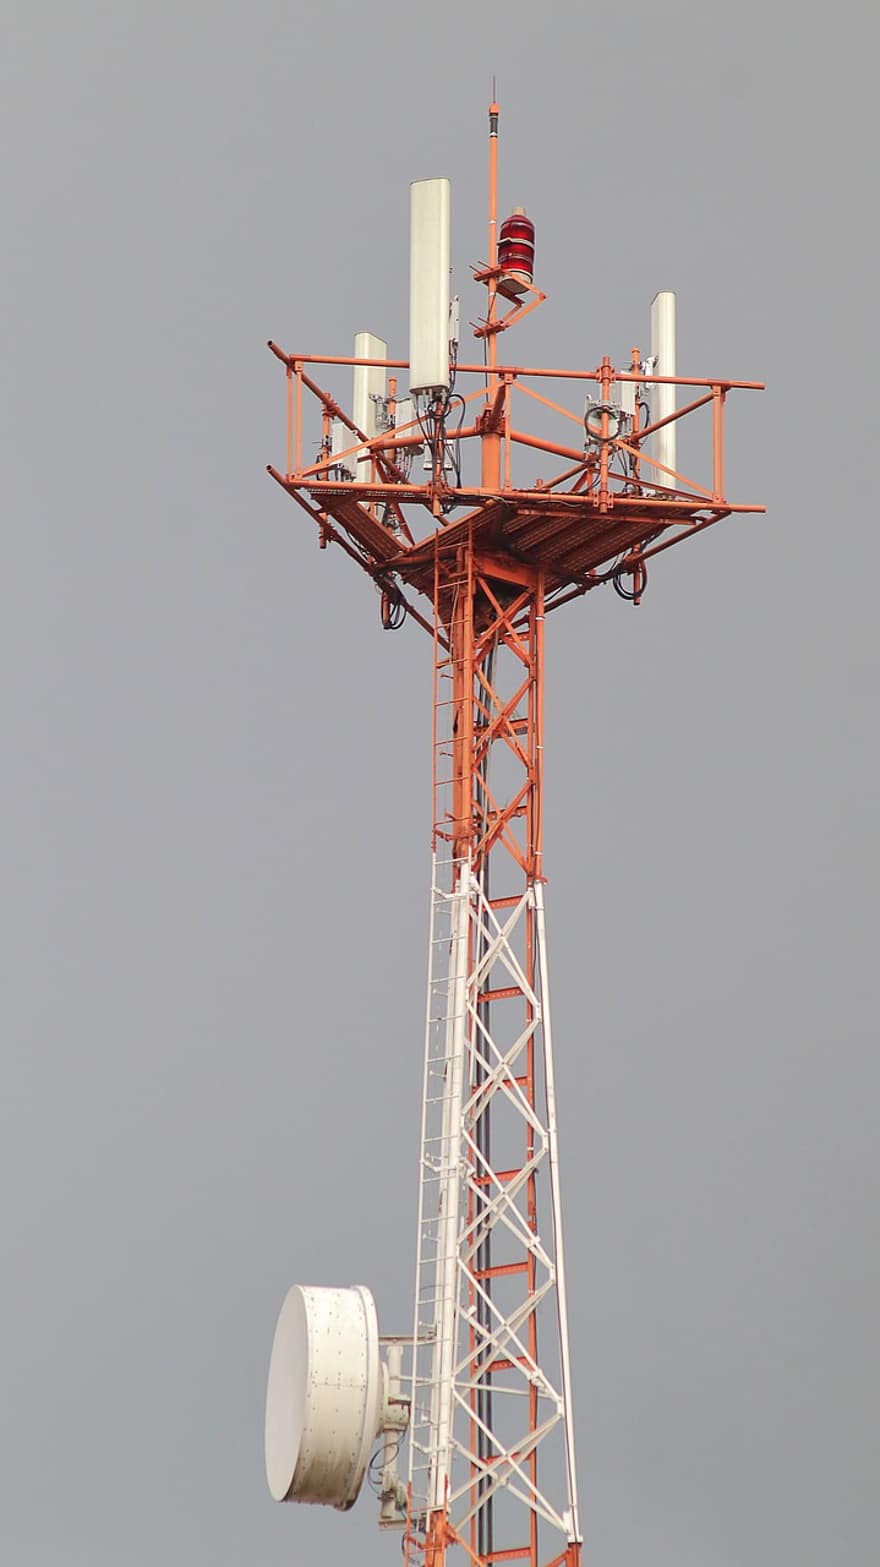 テレコミュニケーションタワー、ラジオマスト、タワー、アンテナ、マスト、構造、テレコミュニケーション、周波数、送信、接続